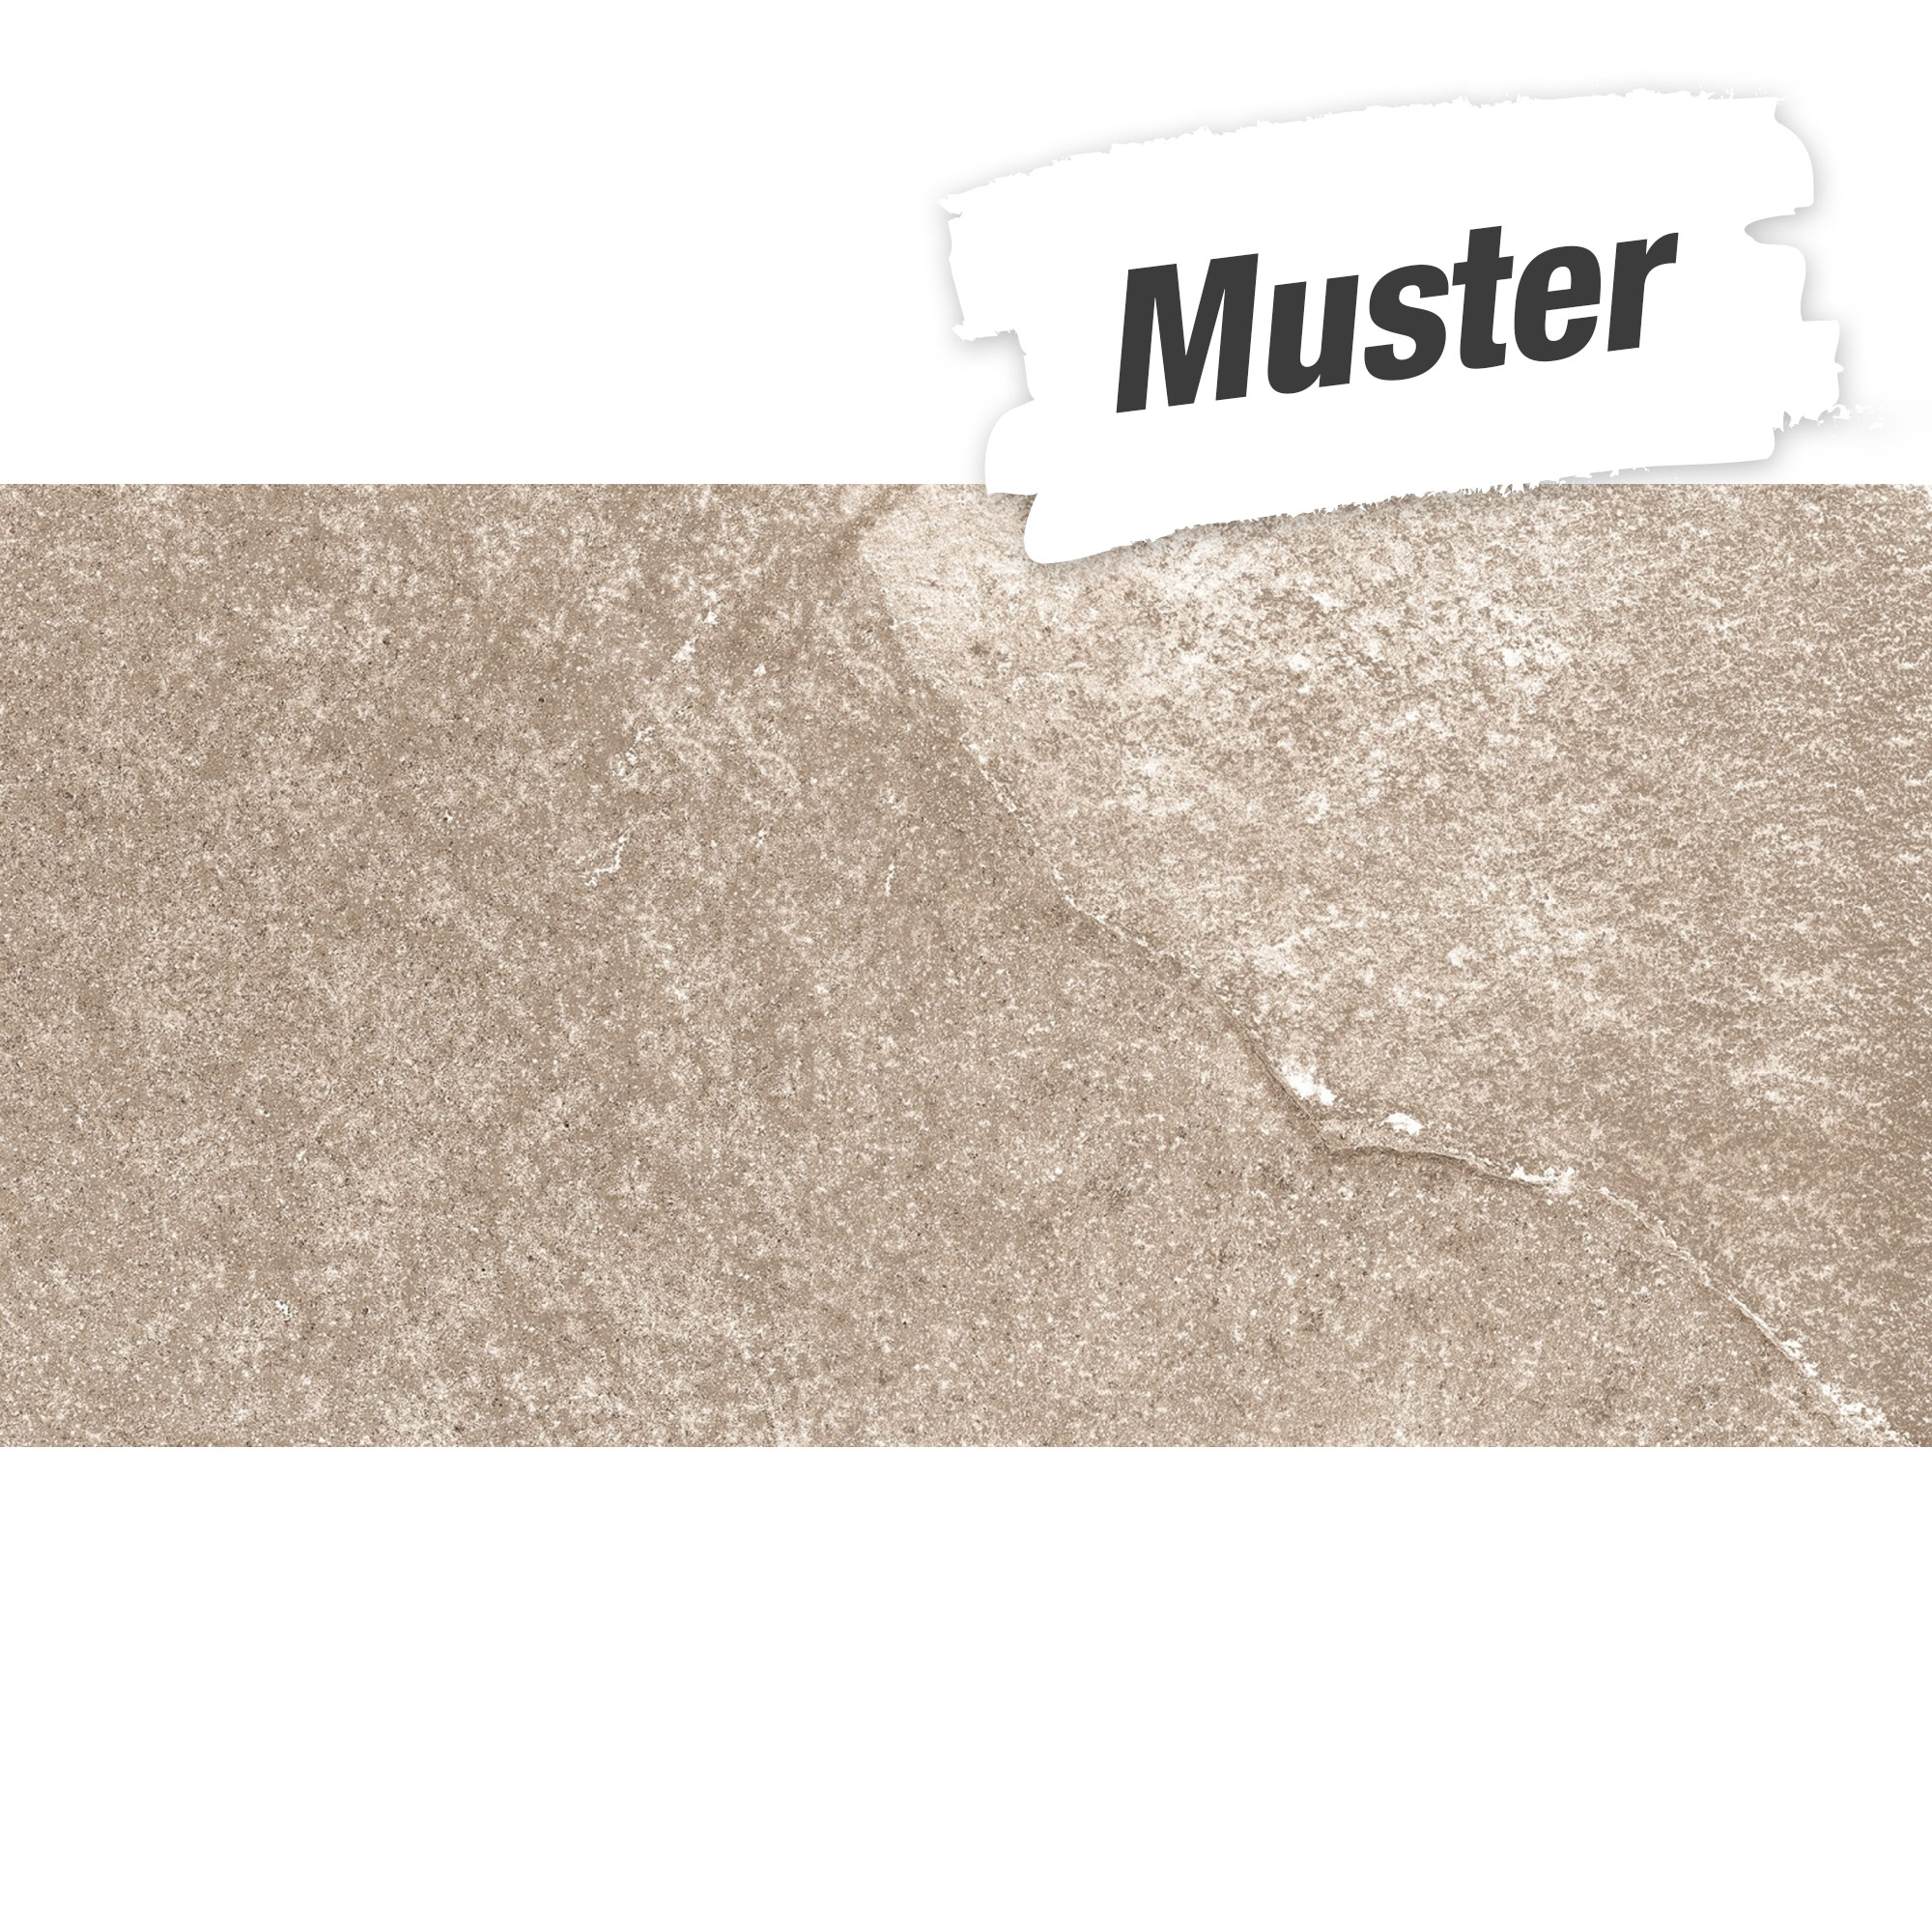 Muster zur Bodenfliese 'Materia' Feinsteinzeug beige 30 x 60 cm + product picture